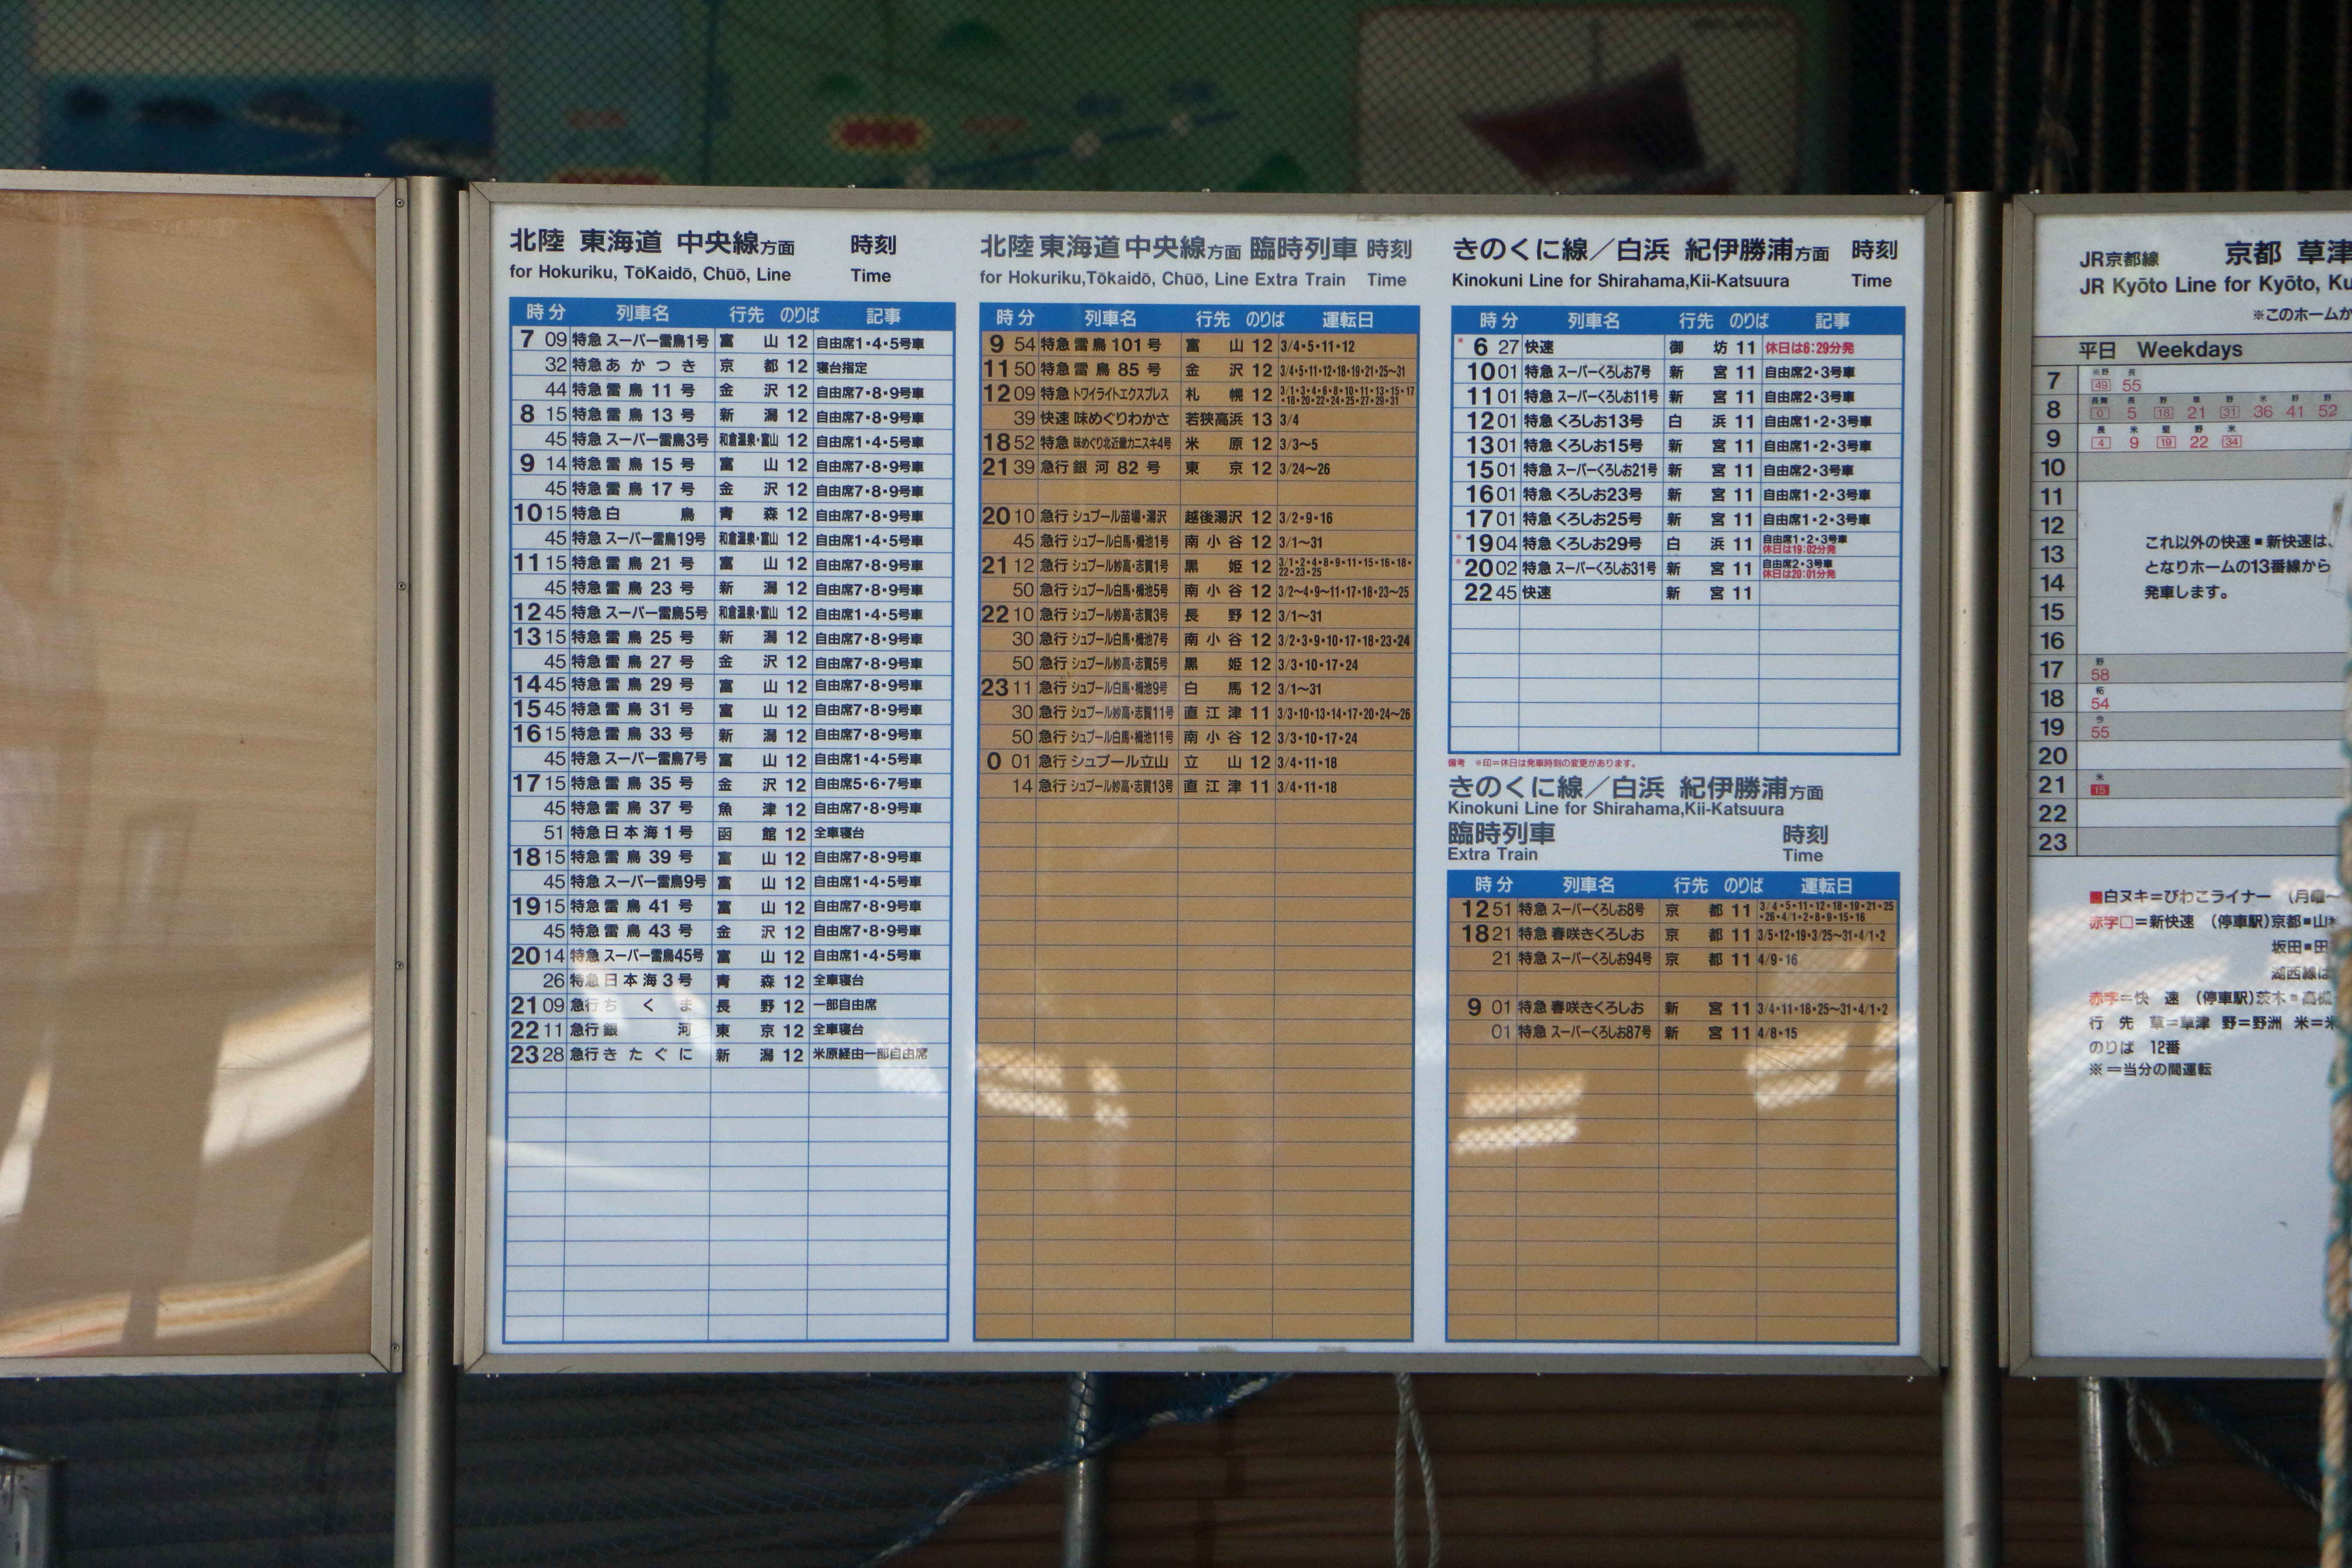 ブログ 何時の 新大阪駅にあった謎の時刻表 東海道くんのあれこれ